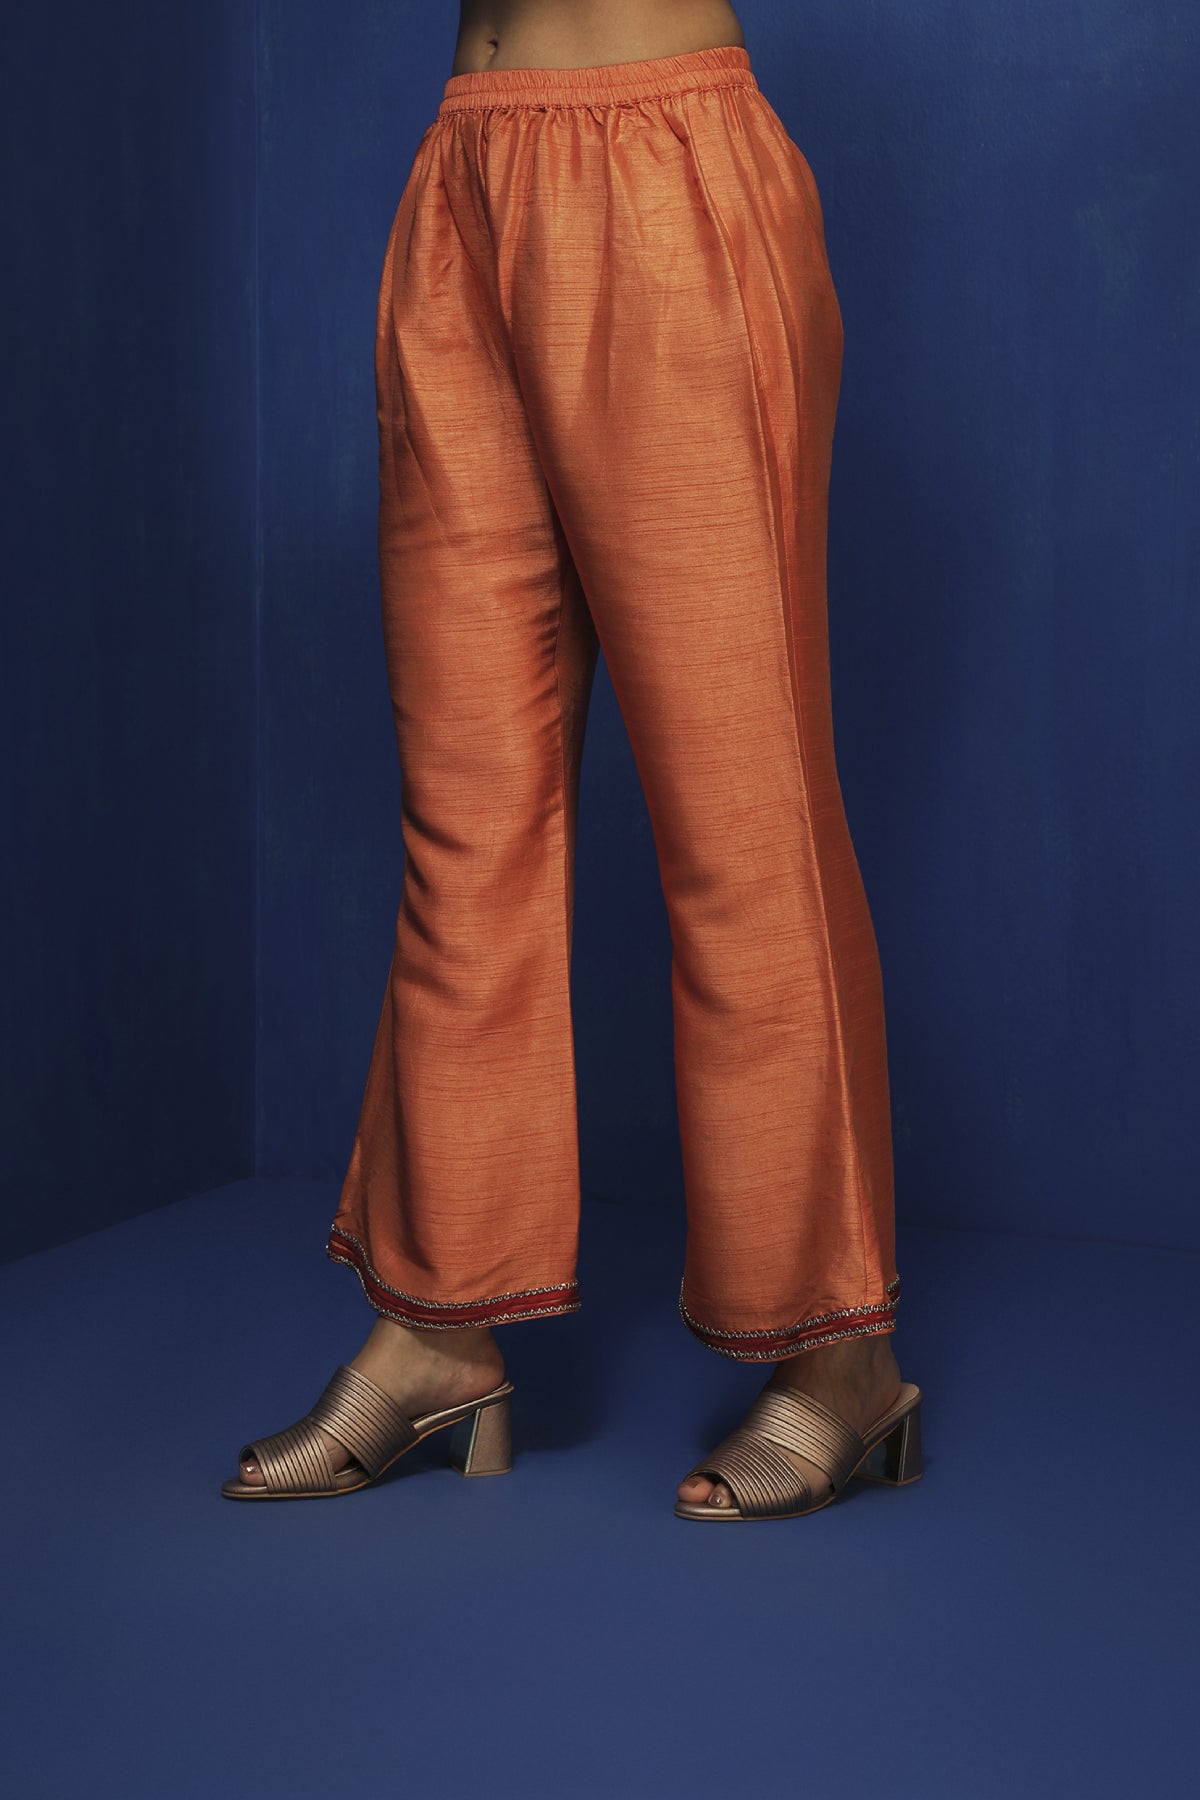 Orange bell bottom pants